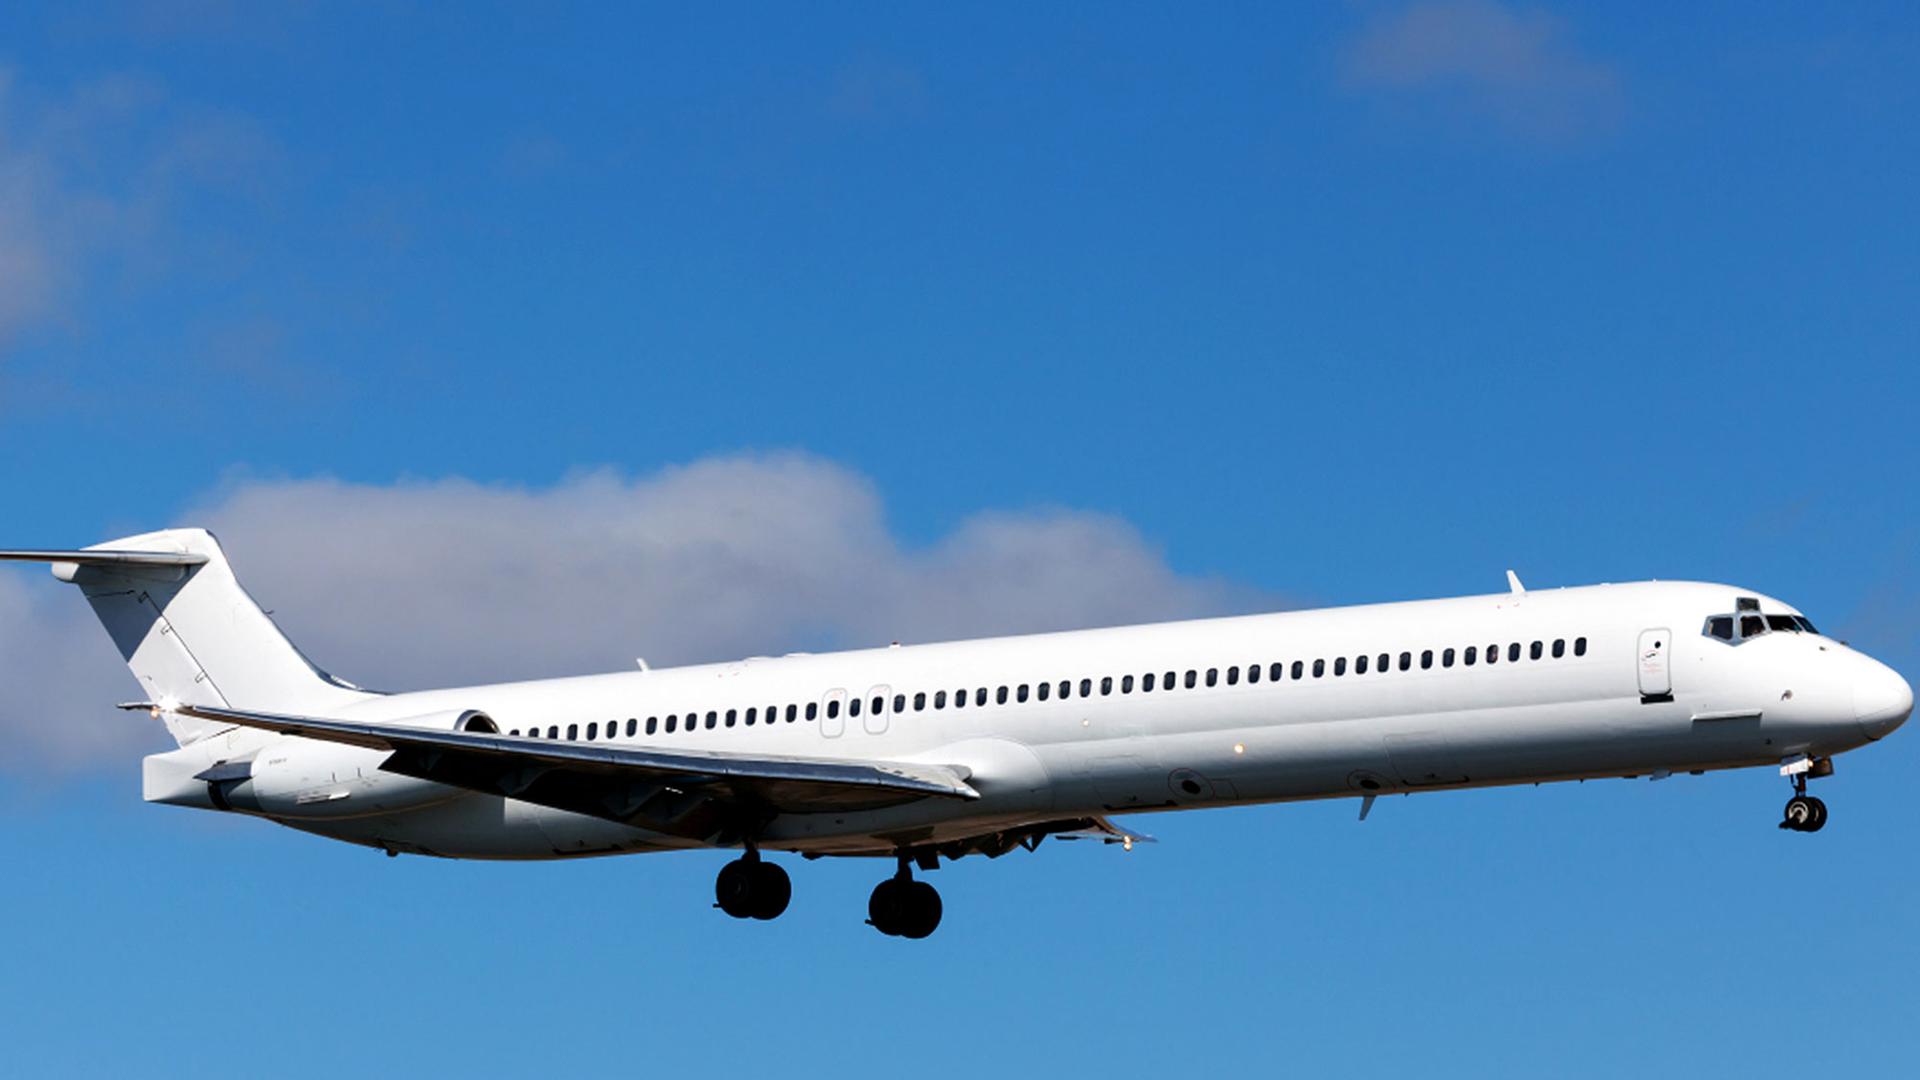 Ein Foto vom 07.06.2014 zeigt das über Mali abgestürzte Flugzeug am Arrecife-Lanzarote-Flughafen, eine Swiftair McDonnell Douglas MD-83.